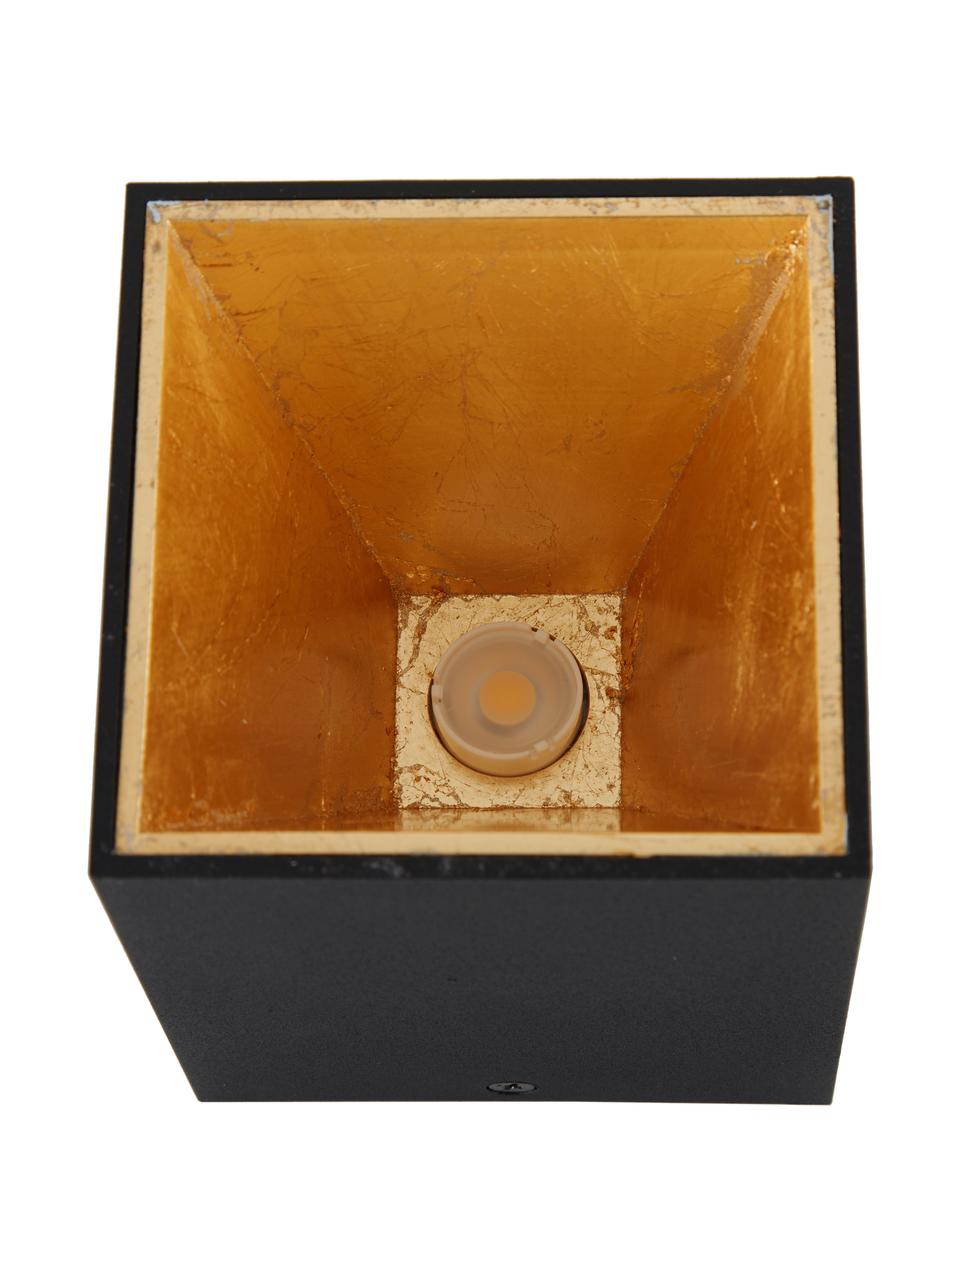 LED-Deckenspot Marty in Schwarz-Gold mit Antik-Finish, Schwarz,Goldfarben, B 10 x H 12 cm